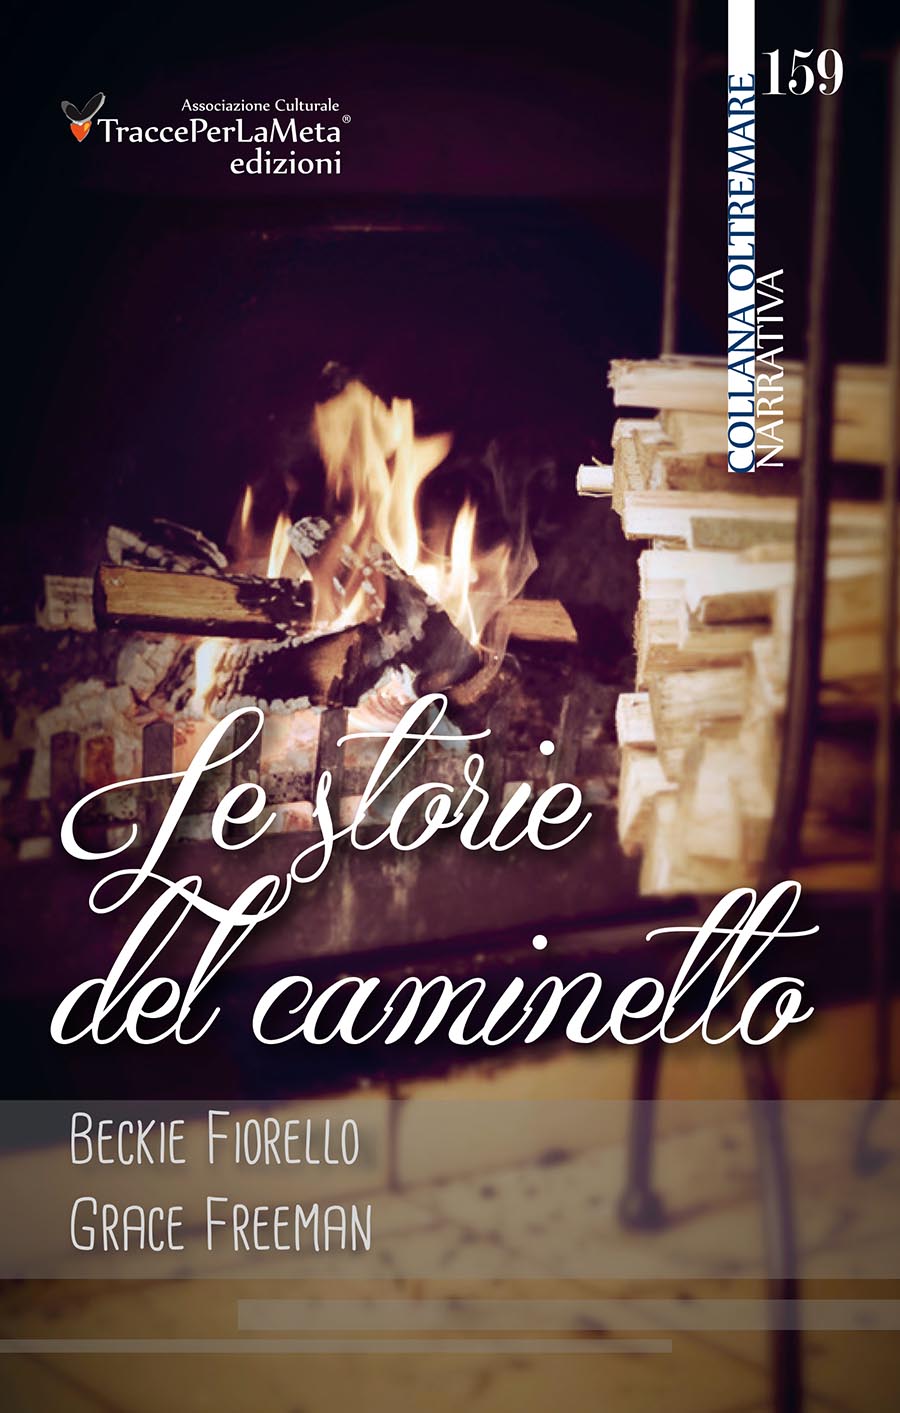 Esce “Le storie del caminetto” la nuova raccolta di racconti di Beckie Fiorello e Grace Freeman